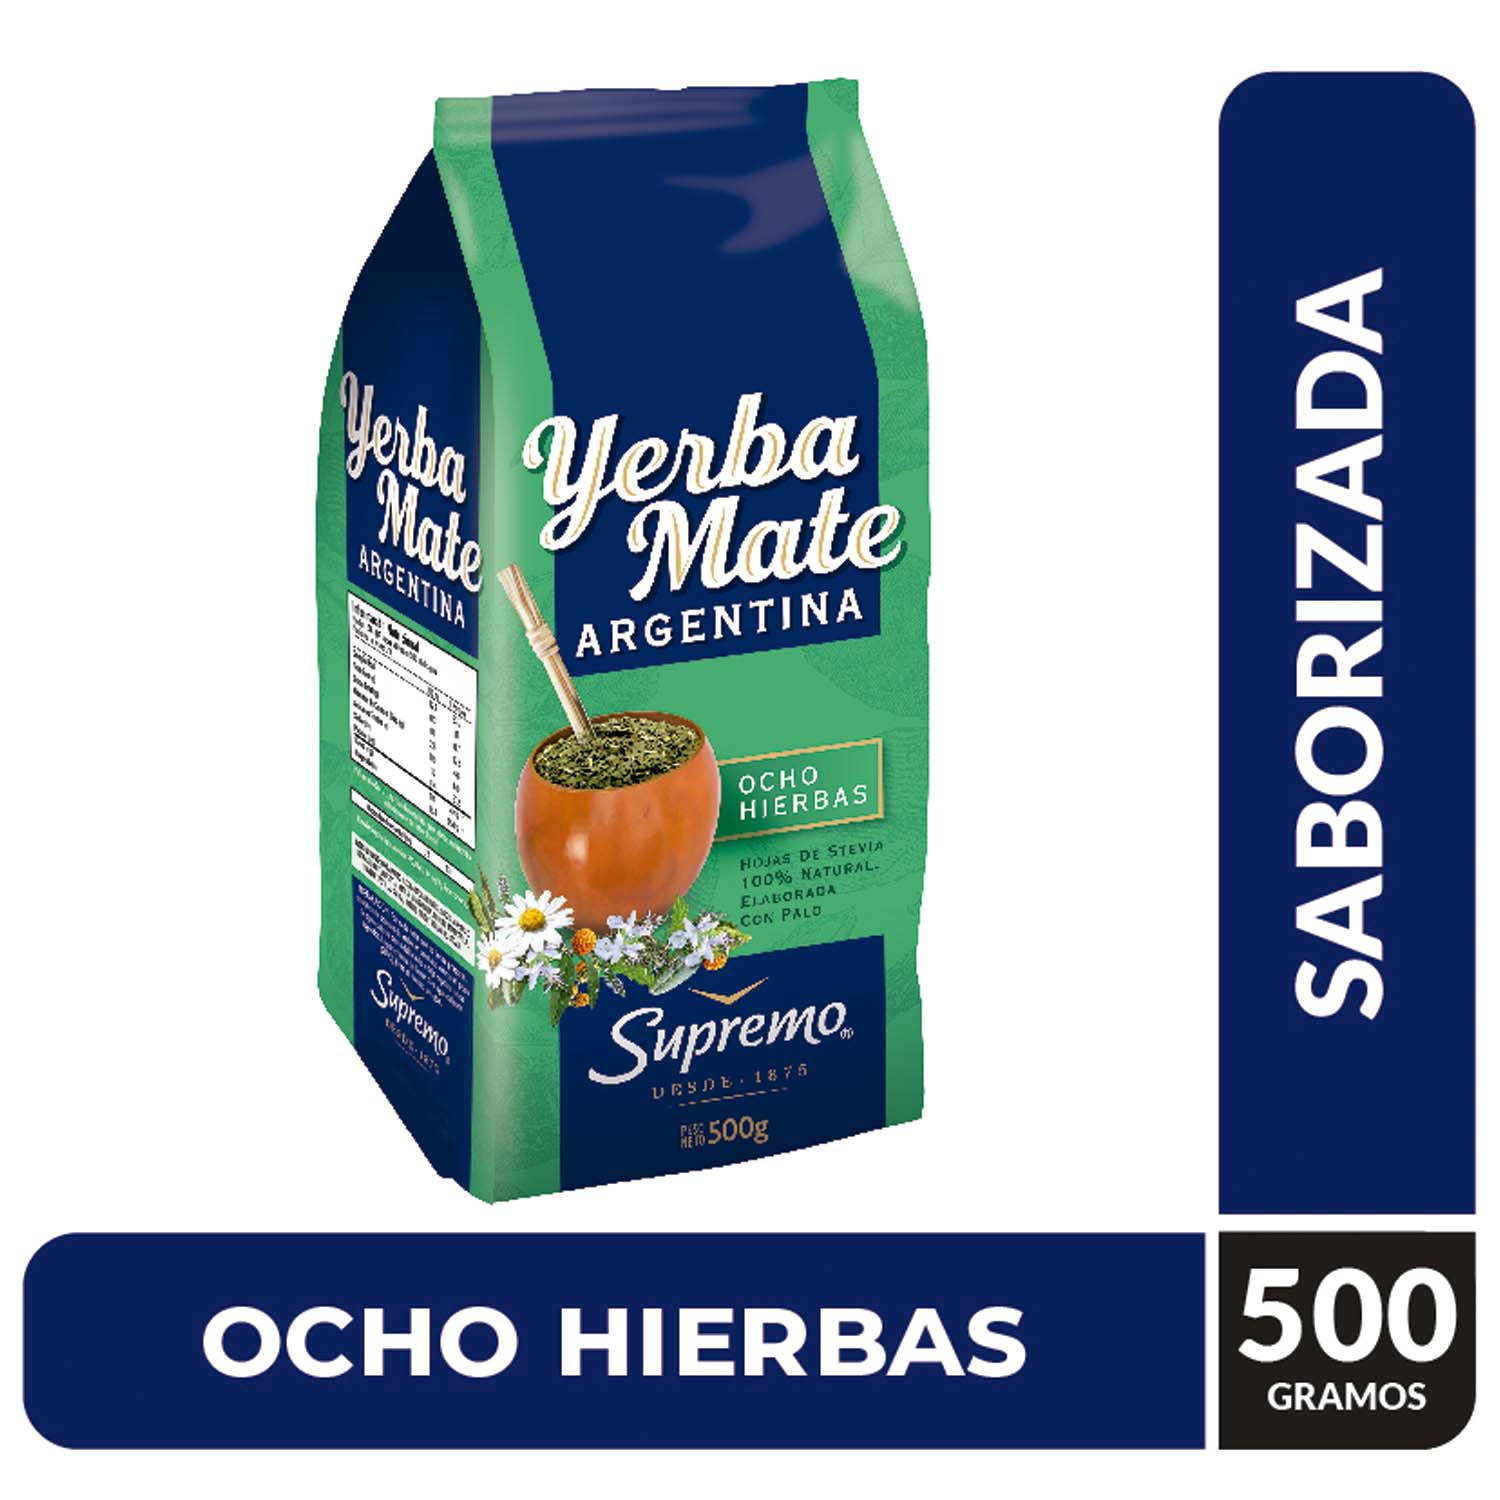 Yerba mate Supremo 500 g, Argentina, 8 hierbas